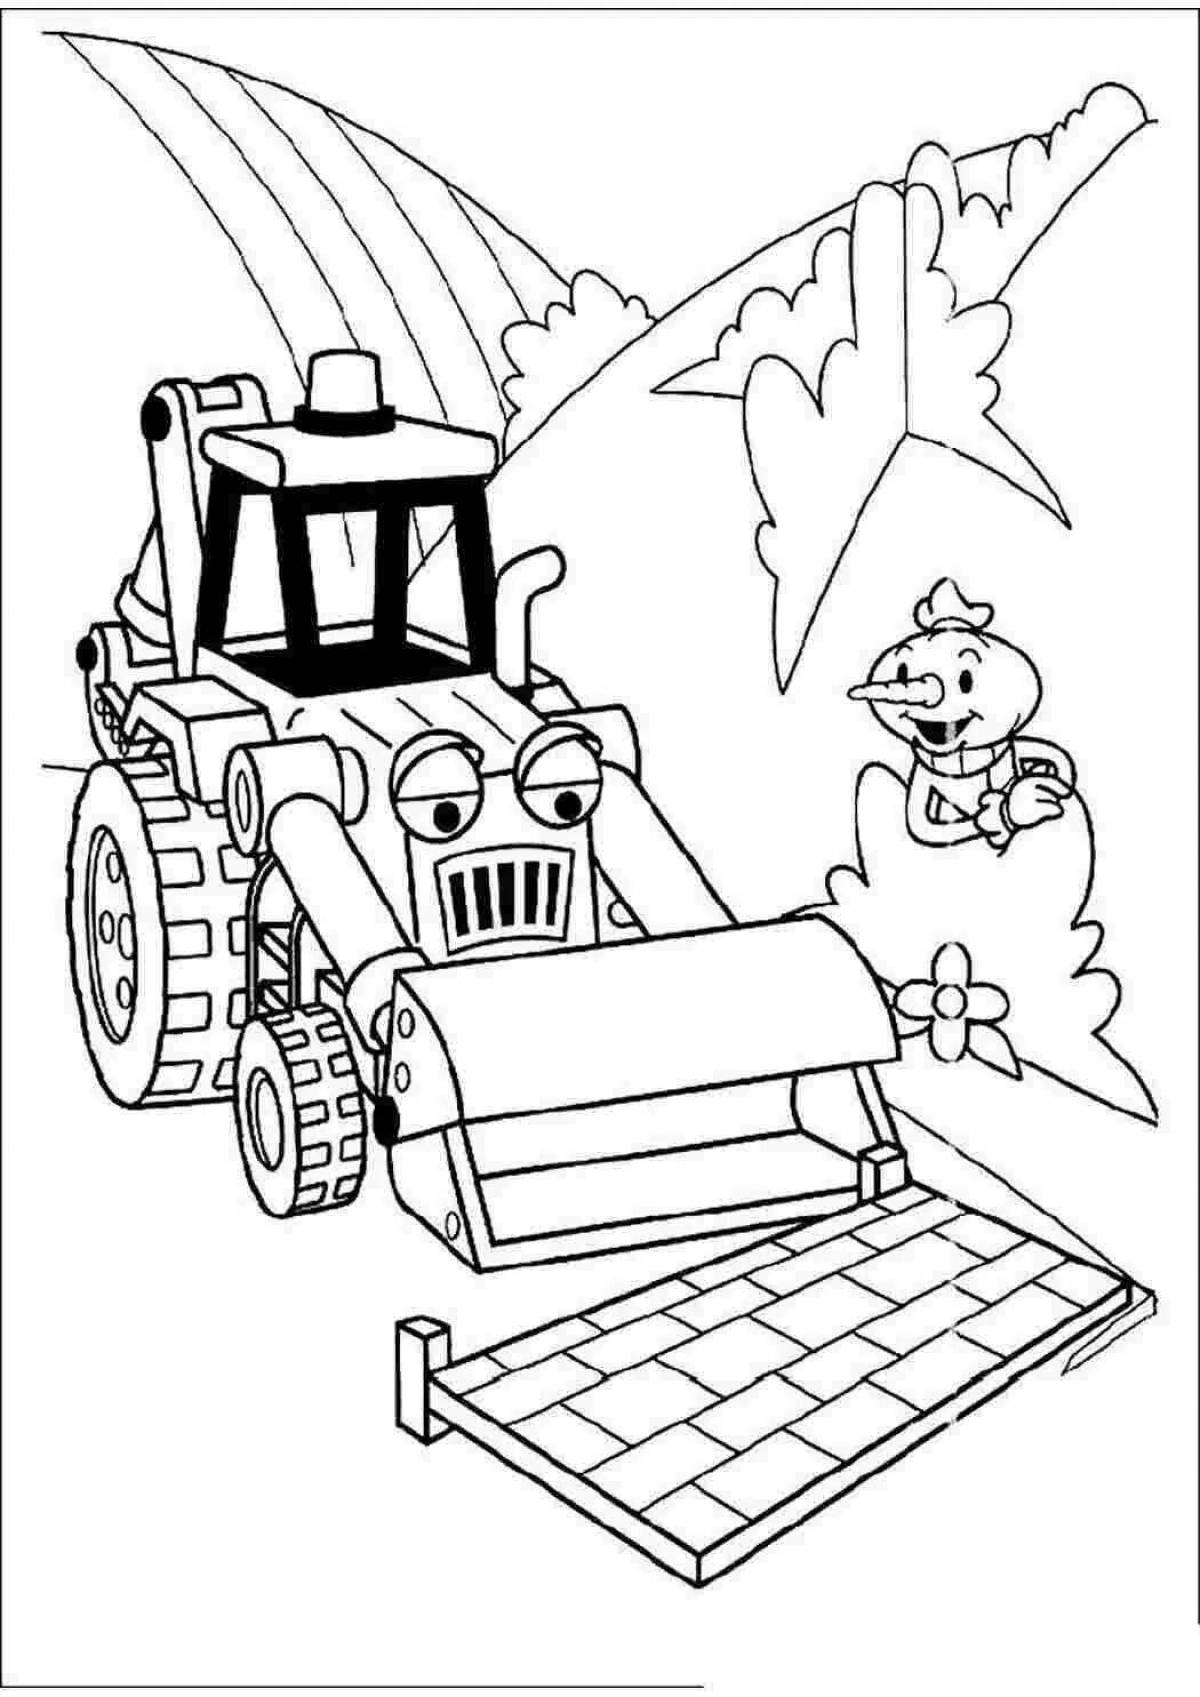 Adorable bulldozer coloring book for kids